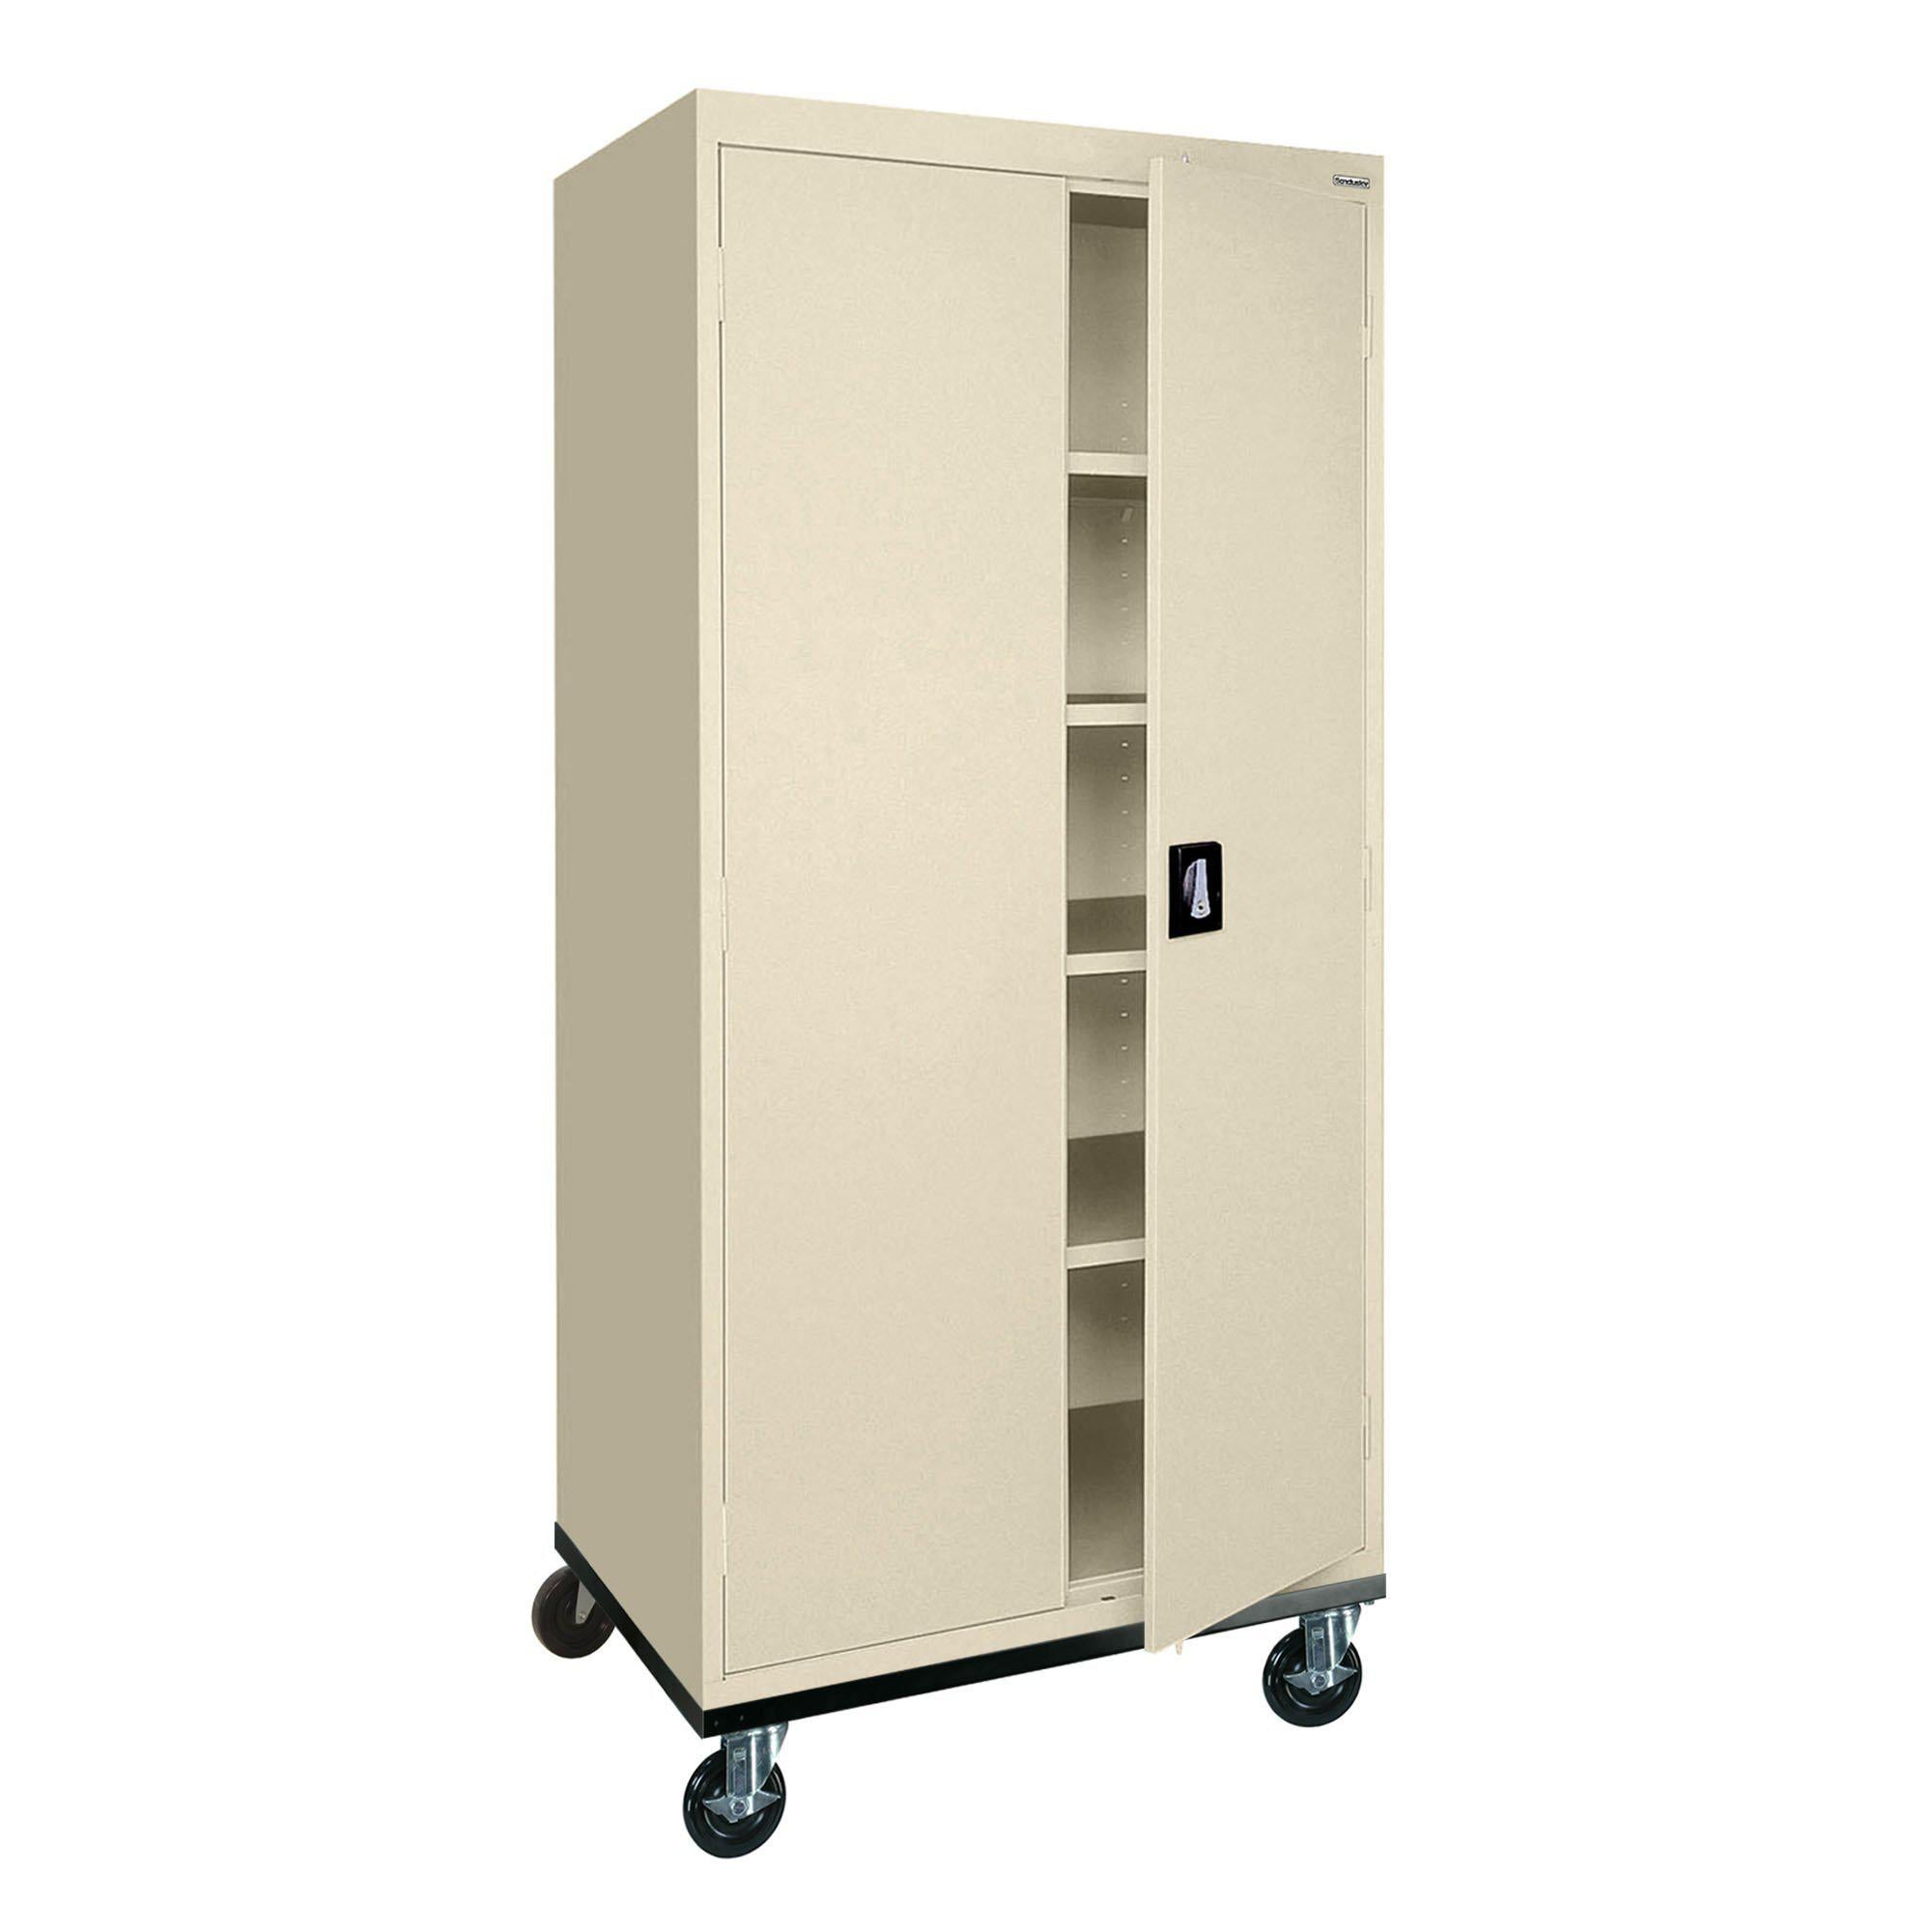 Transport Series Storage Cabinet, 36 x 24 x 72, Putty